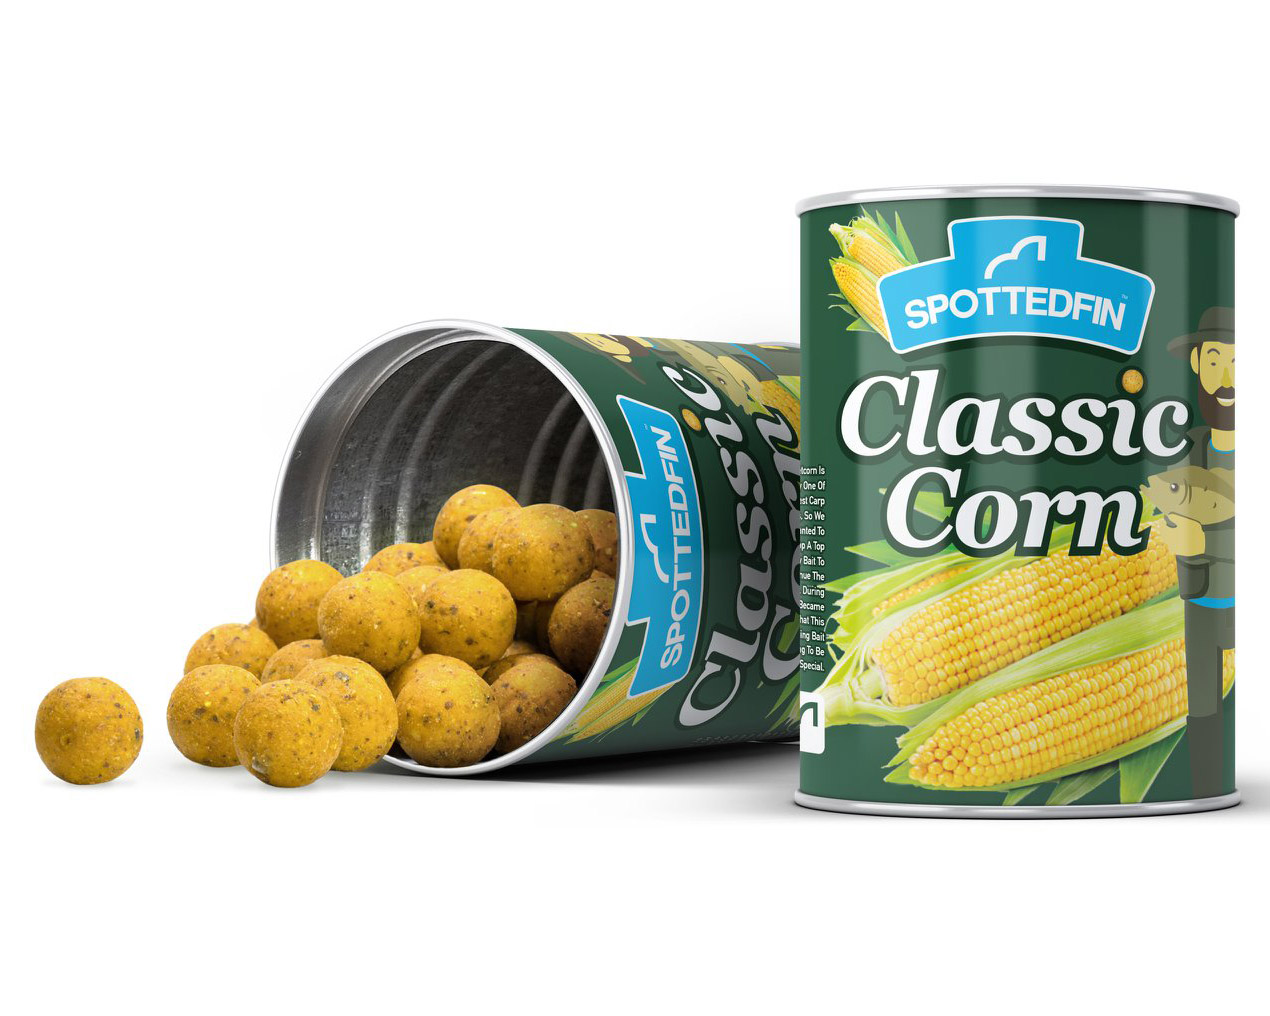 Spotted Fin Classic Corn Újdonságok